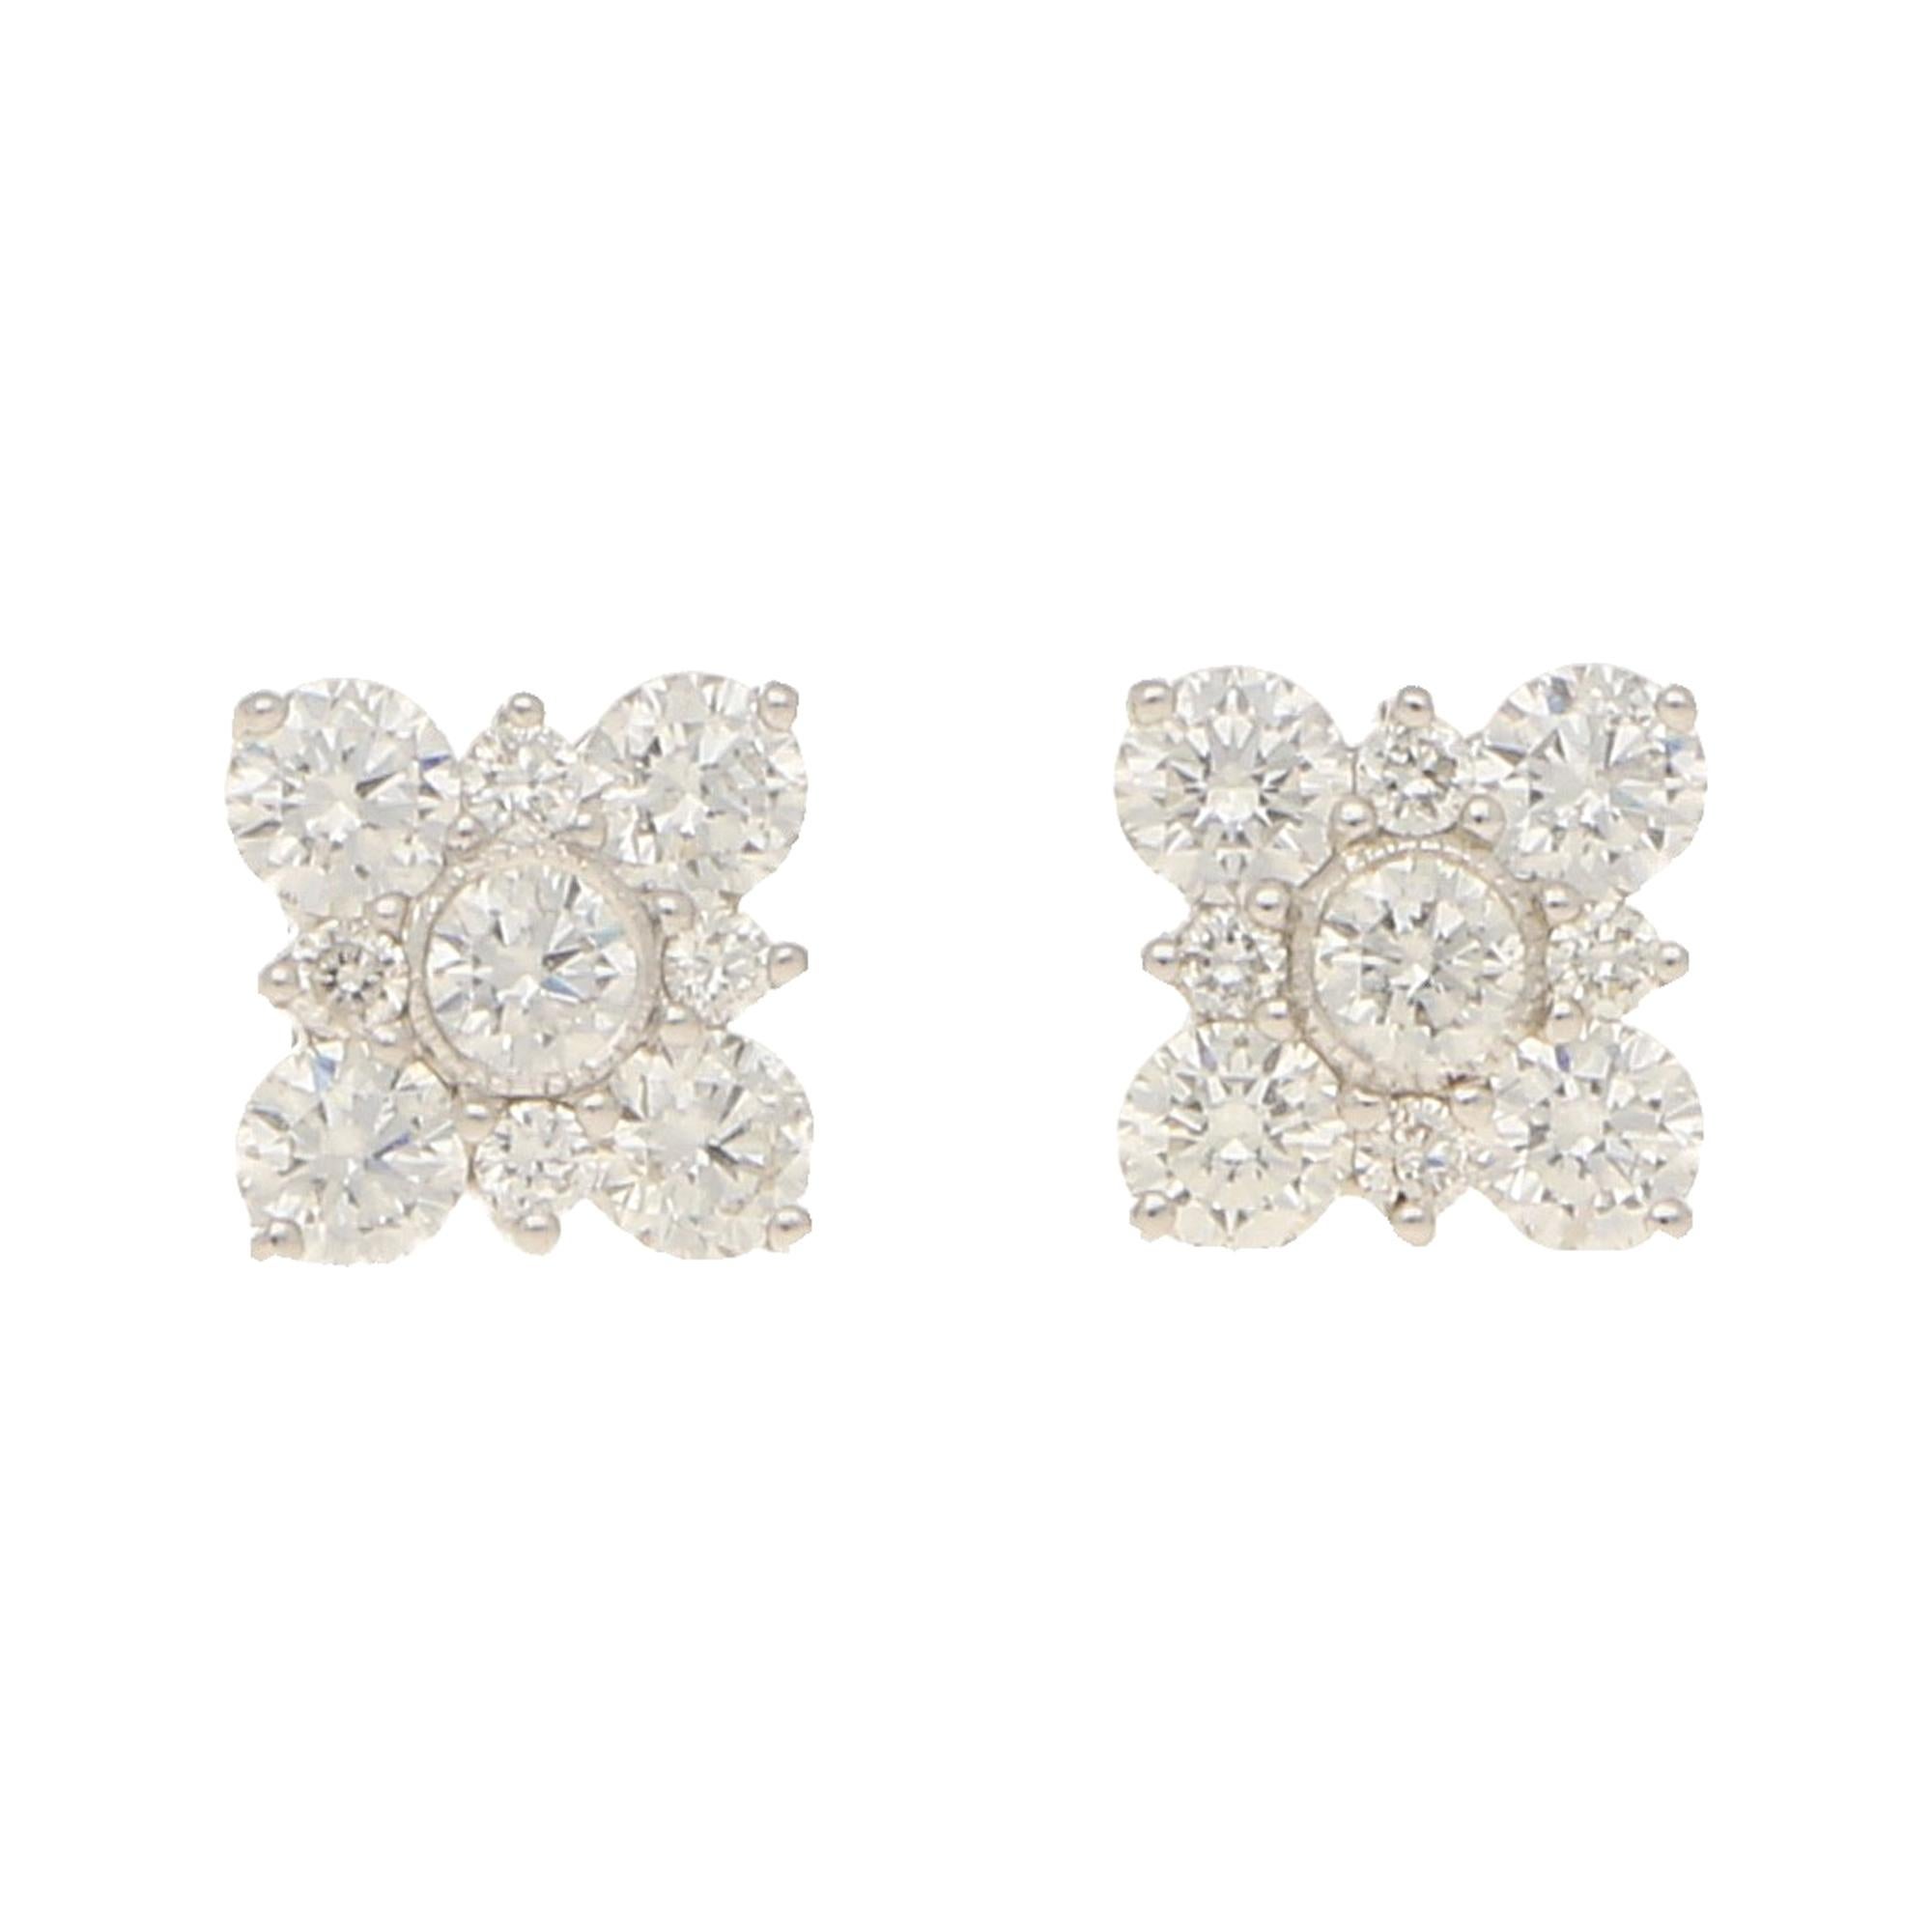 Diamond Stud Earring in 18 Karat White Gold Blossom Shaped